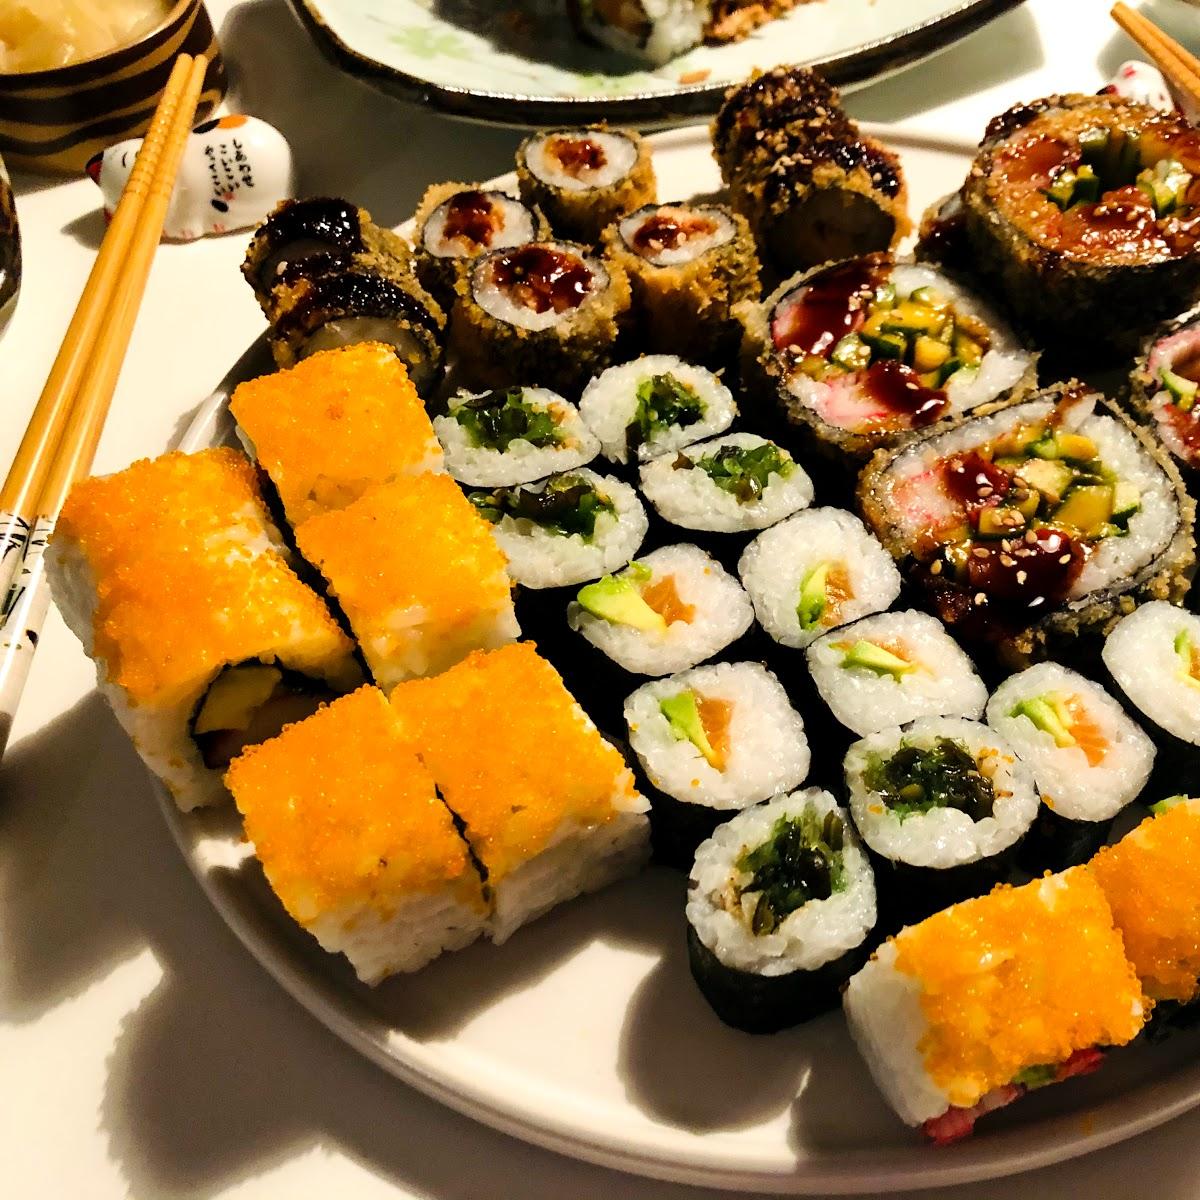 Restaurant "Sushi Momo" in Dortmund